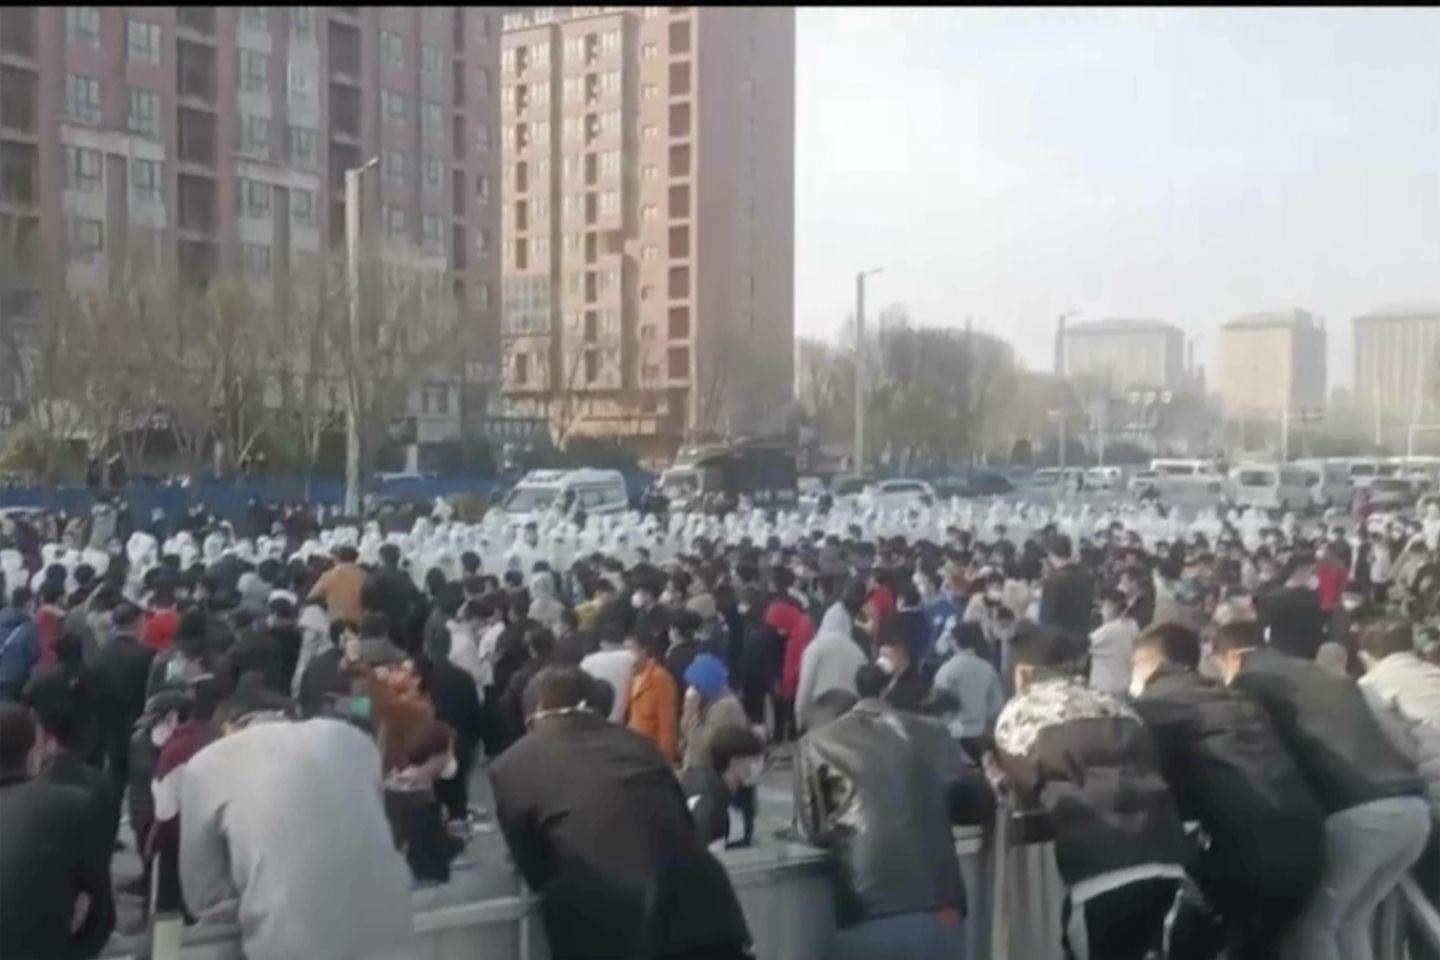 Protes langka meletus di China atas pembatasan COVID, penguncian